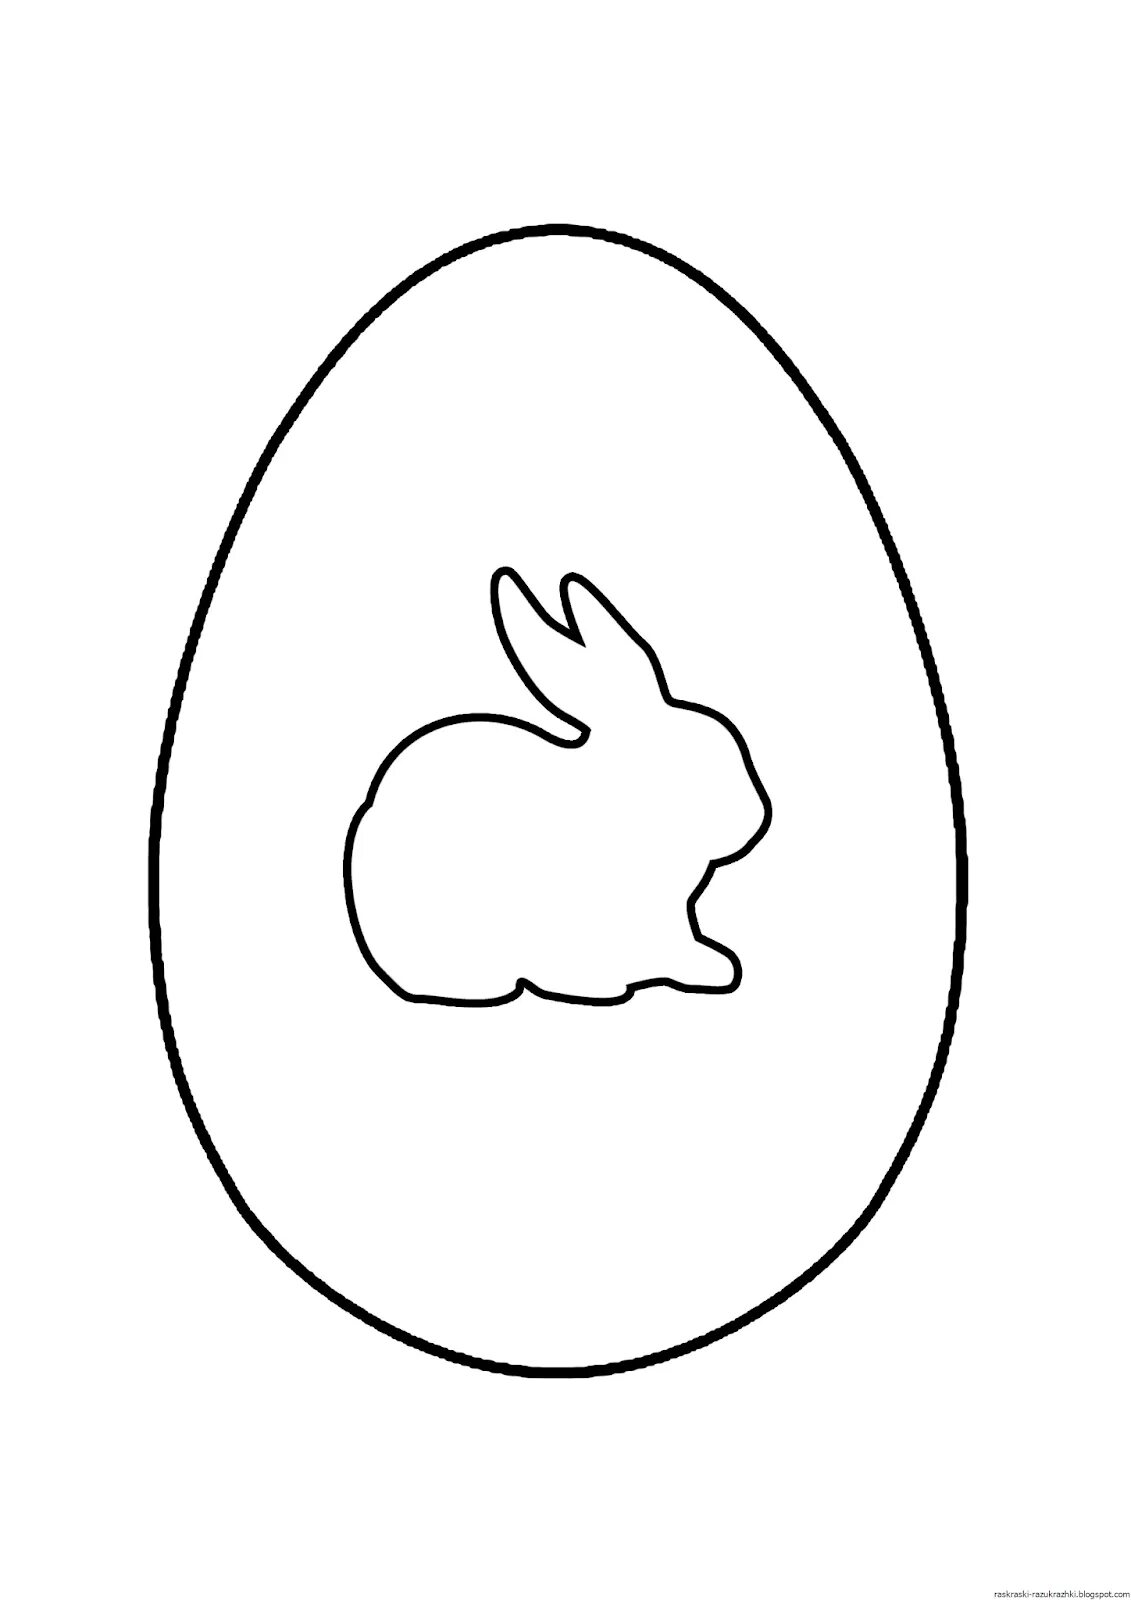 Яйцо для раскрашивания. Яйцо трафарет. Пасхальное яйцо раскраска. Яйцо раскраска для детей. Шаблон пасхального яйца для вырезания